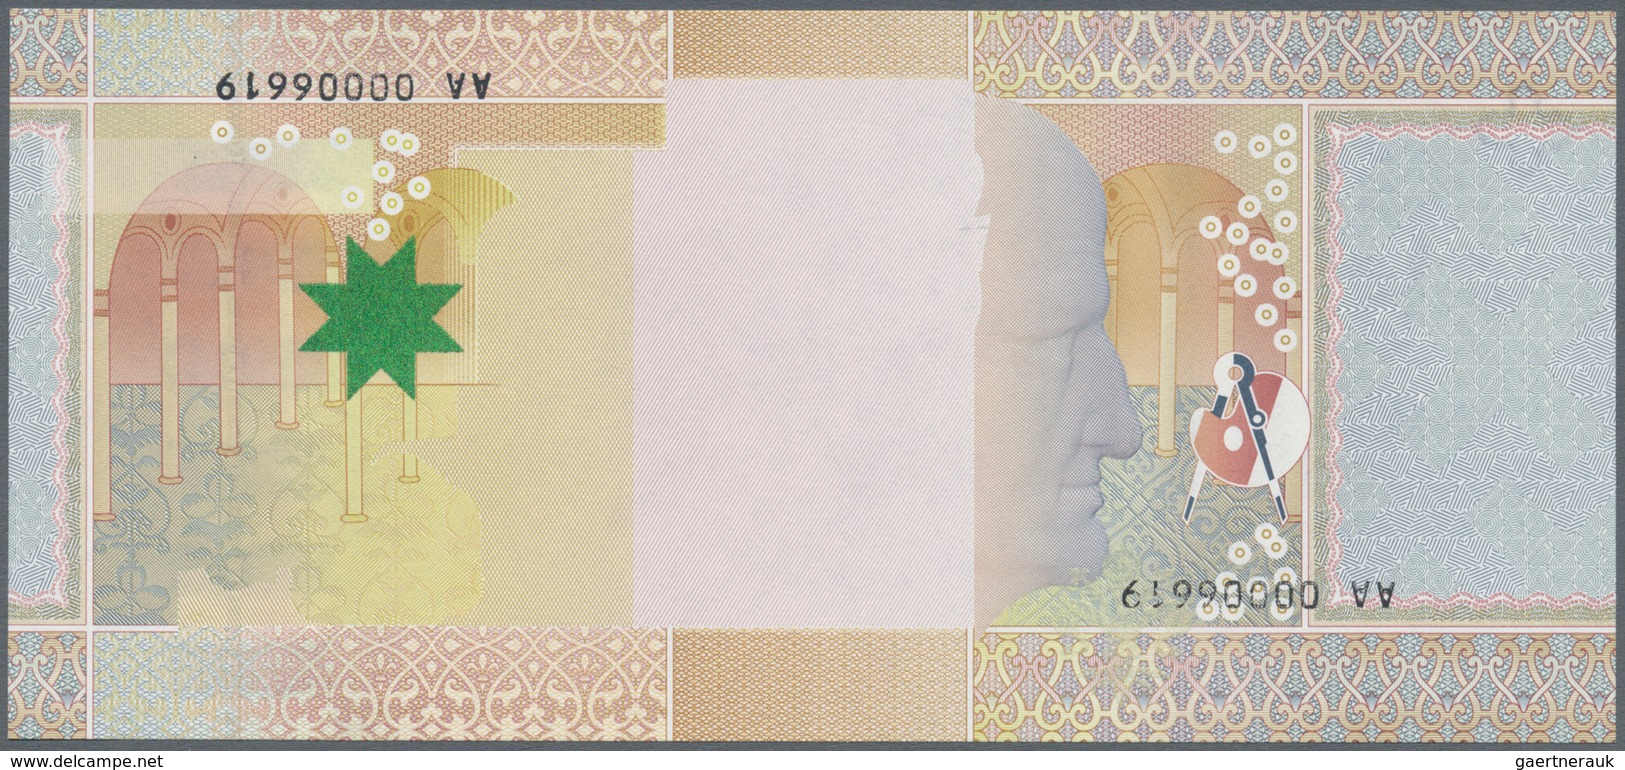 Testbanknoten: Set Of 2 Test Banknotes Printed By De La Rue Giori & KBA Giori. The First One Of De L - Specimen